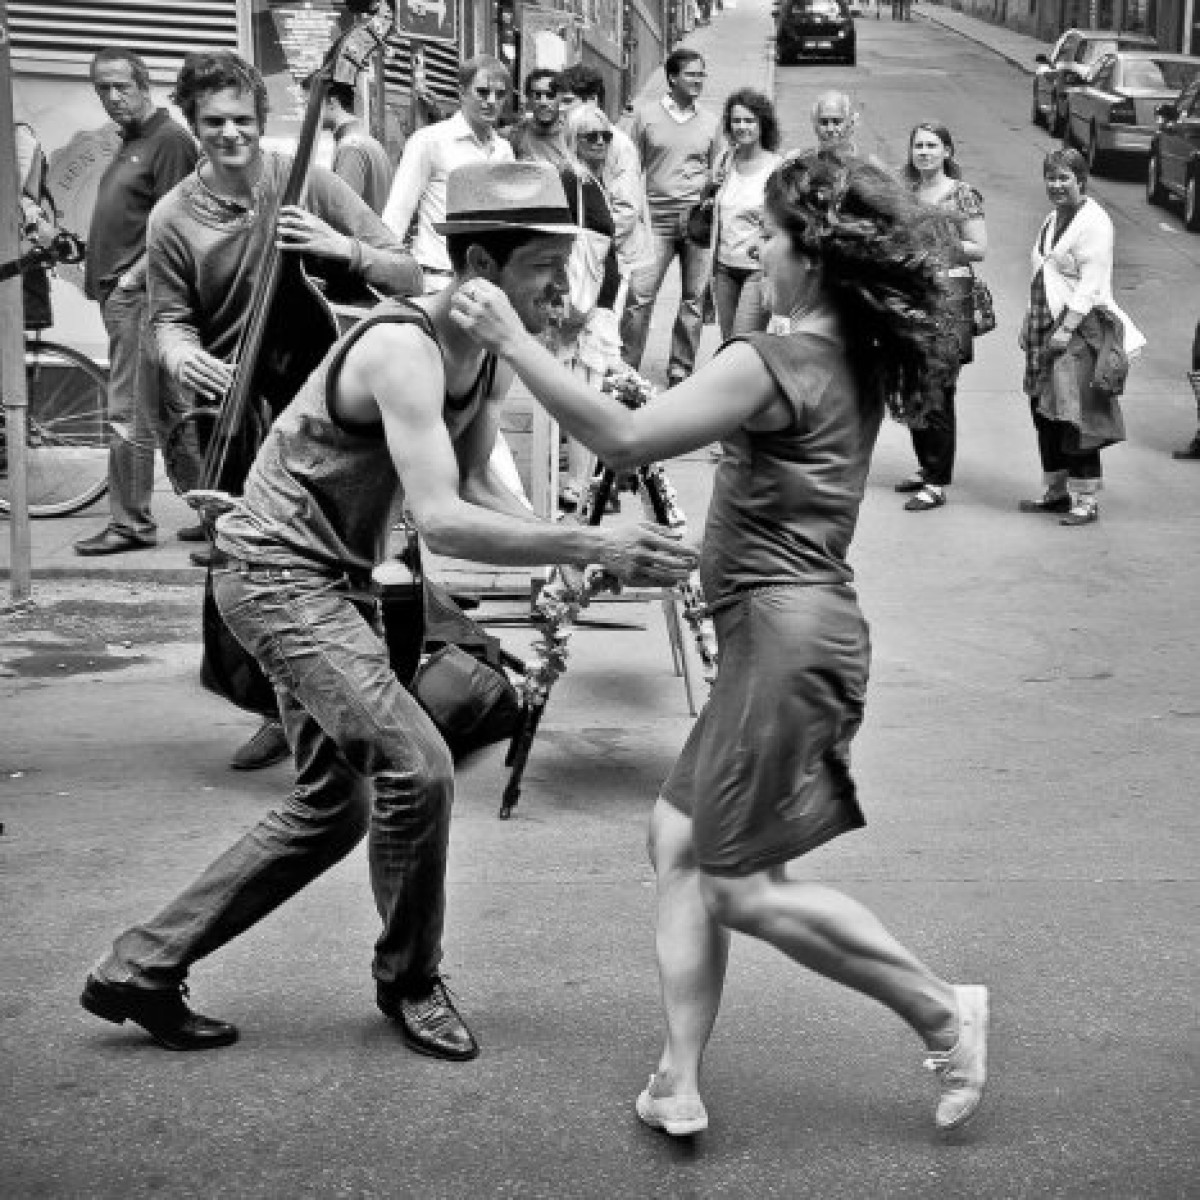 Показать плясать. Линди хоп танец. Танцующие люди. Уличные танцы. Люди танцуют на улице.